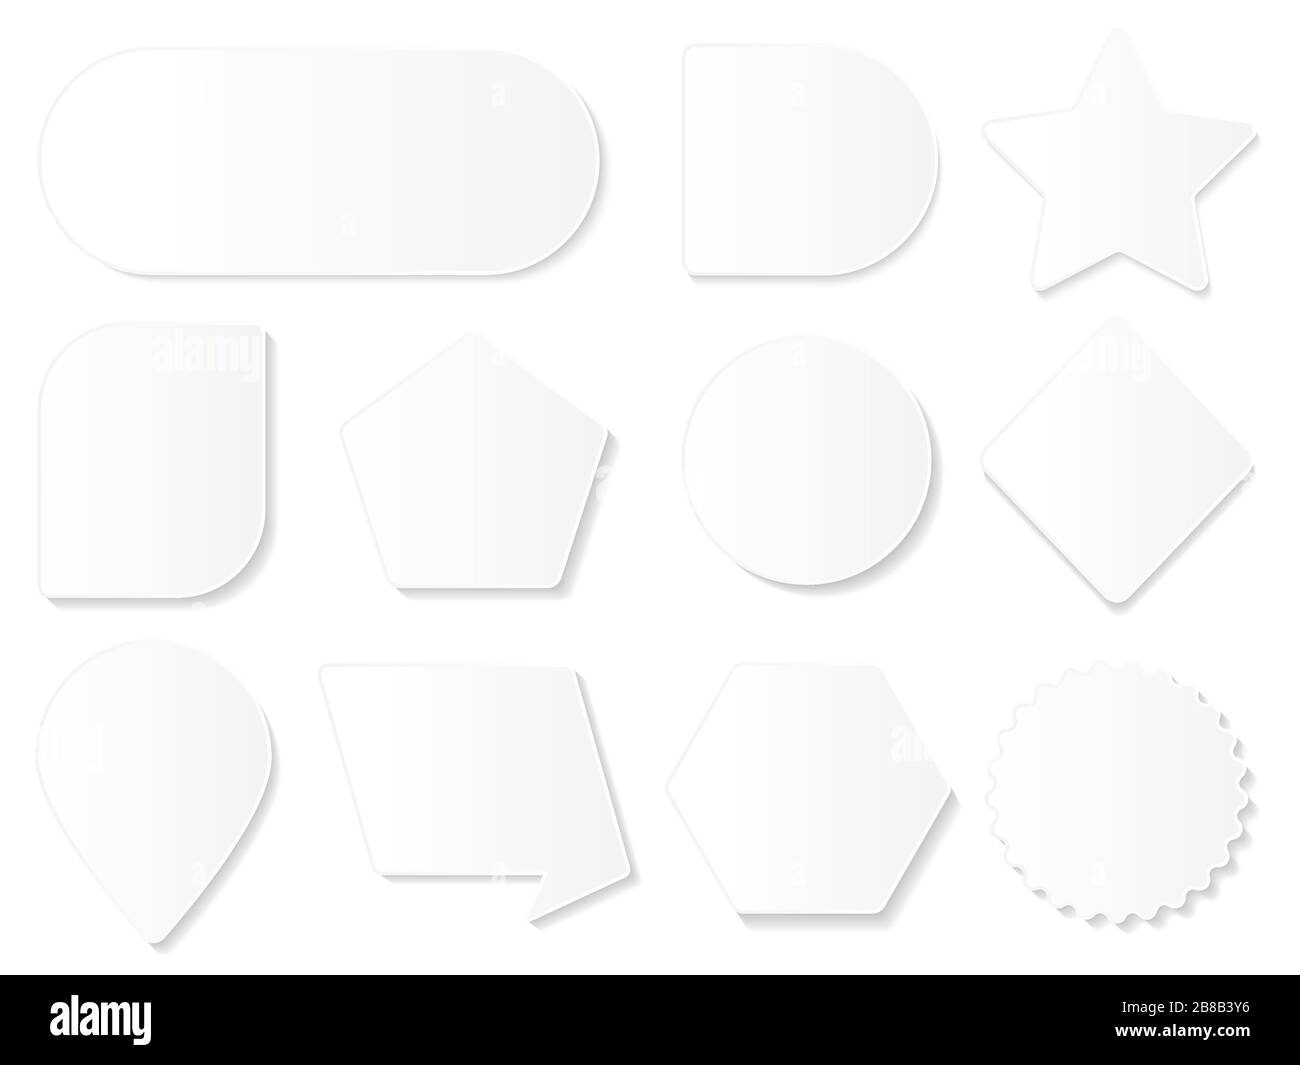 Jeu de différentes figures géométriques vides et couleur blanche Illustration de Vecteur